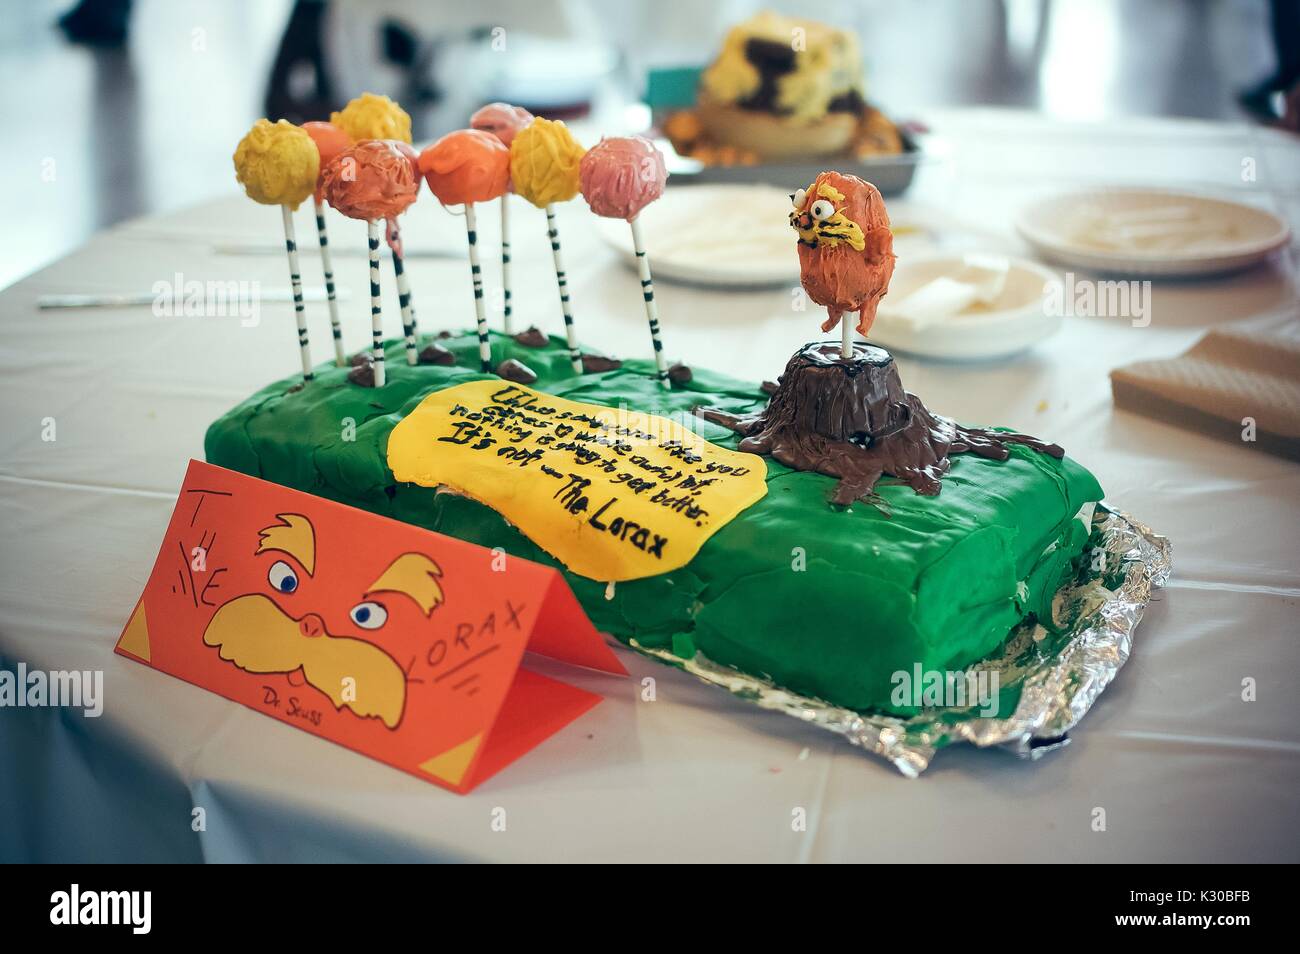 Lorax cake à la Johns Hopkins University's 'Lecture annuelle et le manger" Festival du livre sur les comestibles Homewood campus à Baltimore, Maryland, Mars, 2016. Avec la permission de Eric Chen. Banque D'Images